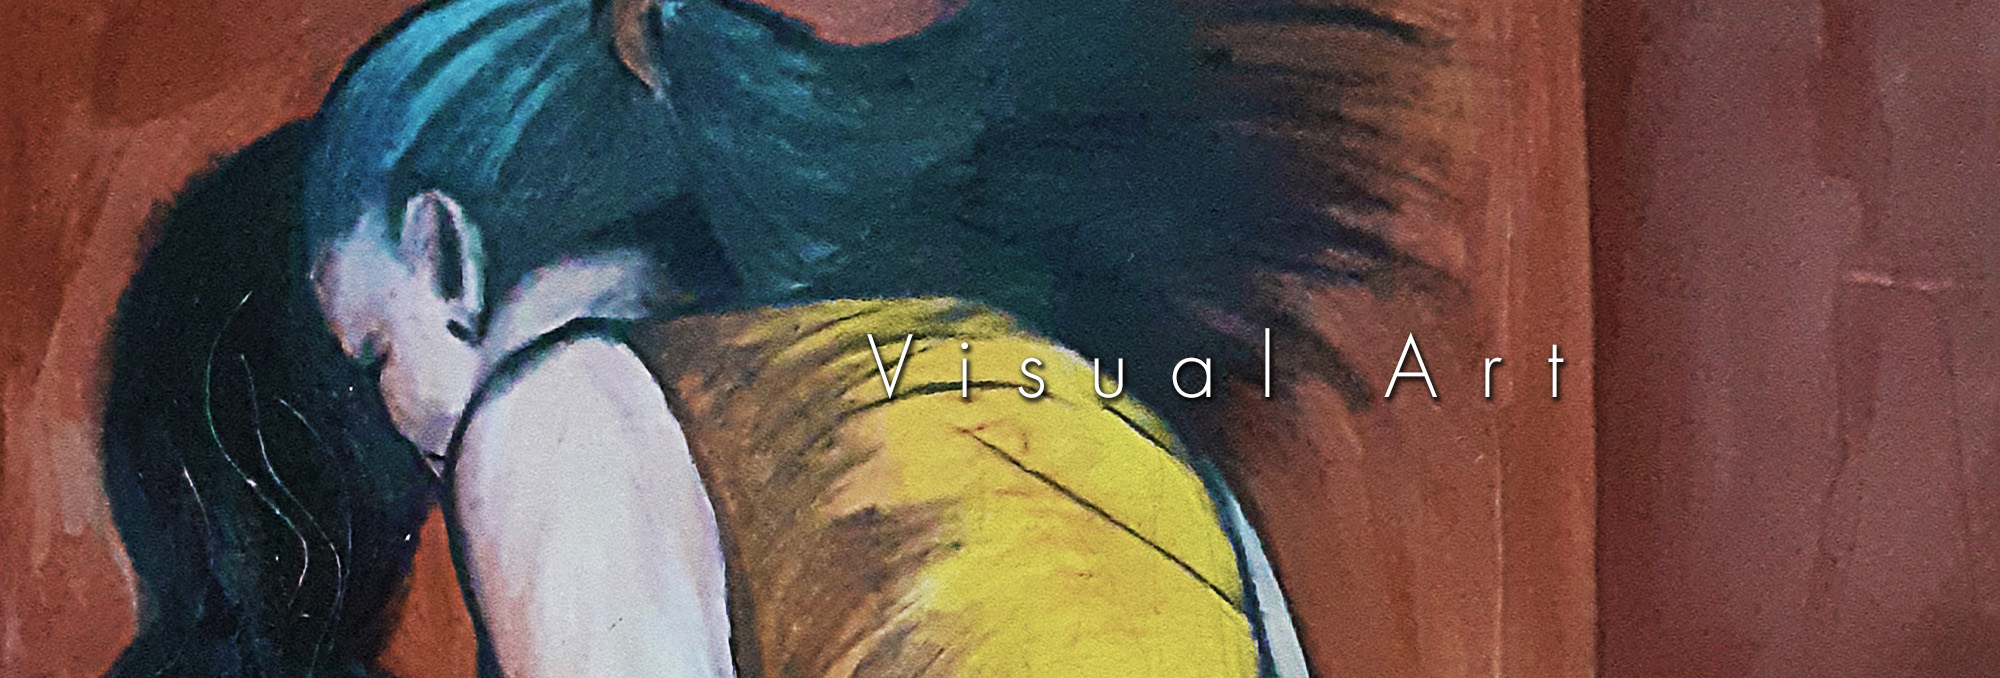 848-visual-art